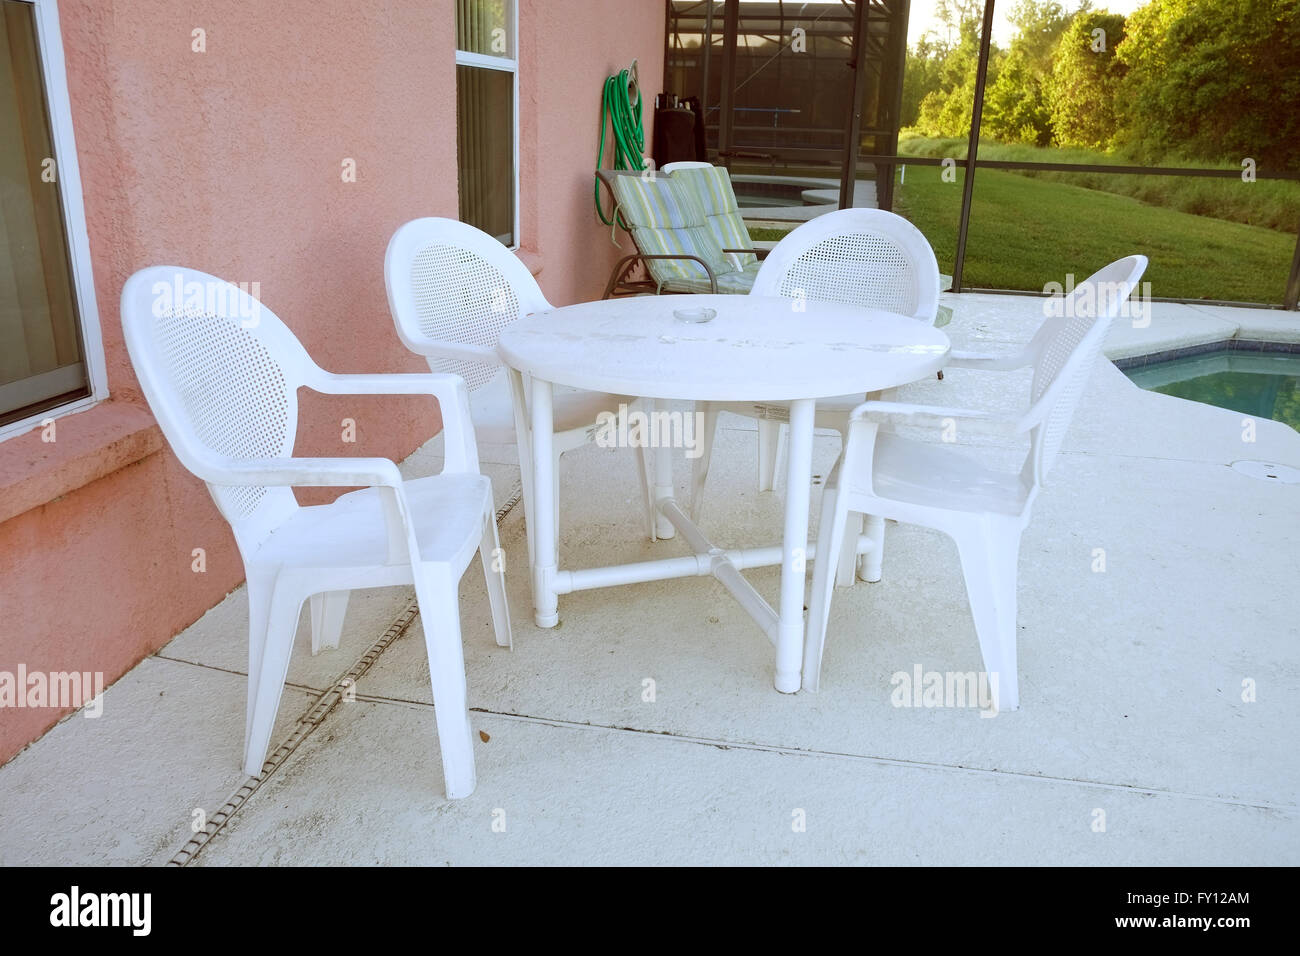 Tables et chaises en plastique blanc à l'extérieur une piscine Floride accueil utilisé pour location de vacances. 19 avril 2016 Banque D'Images